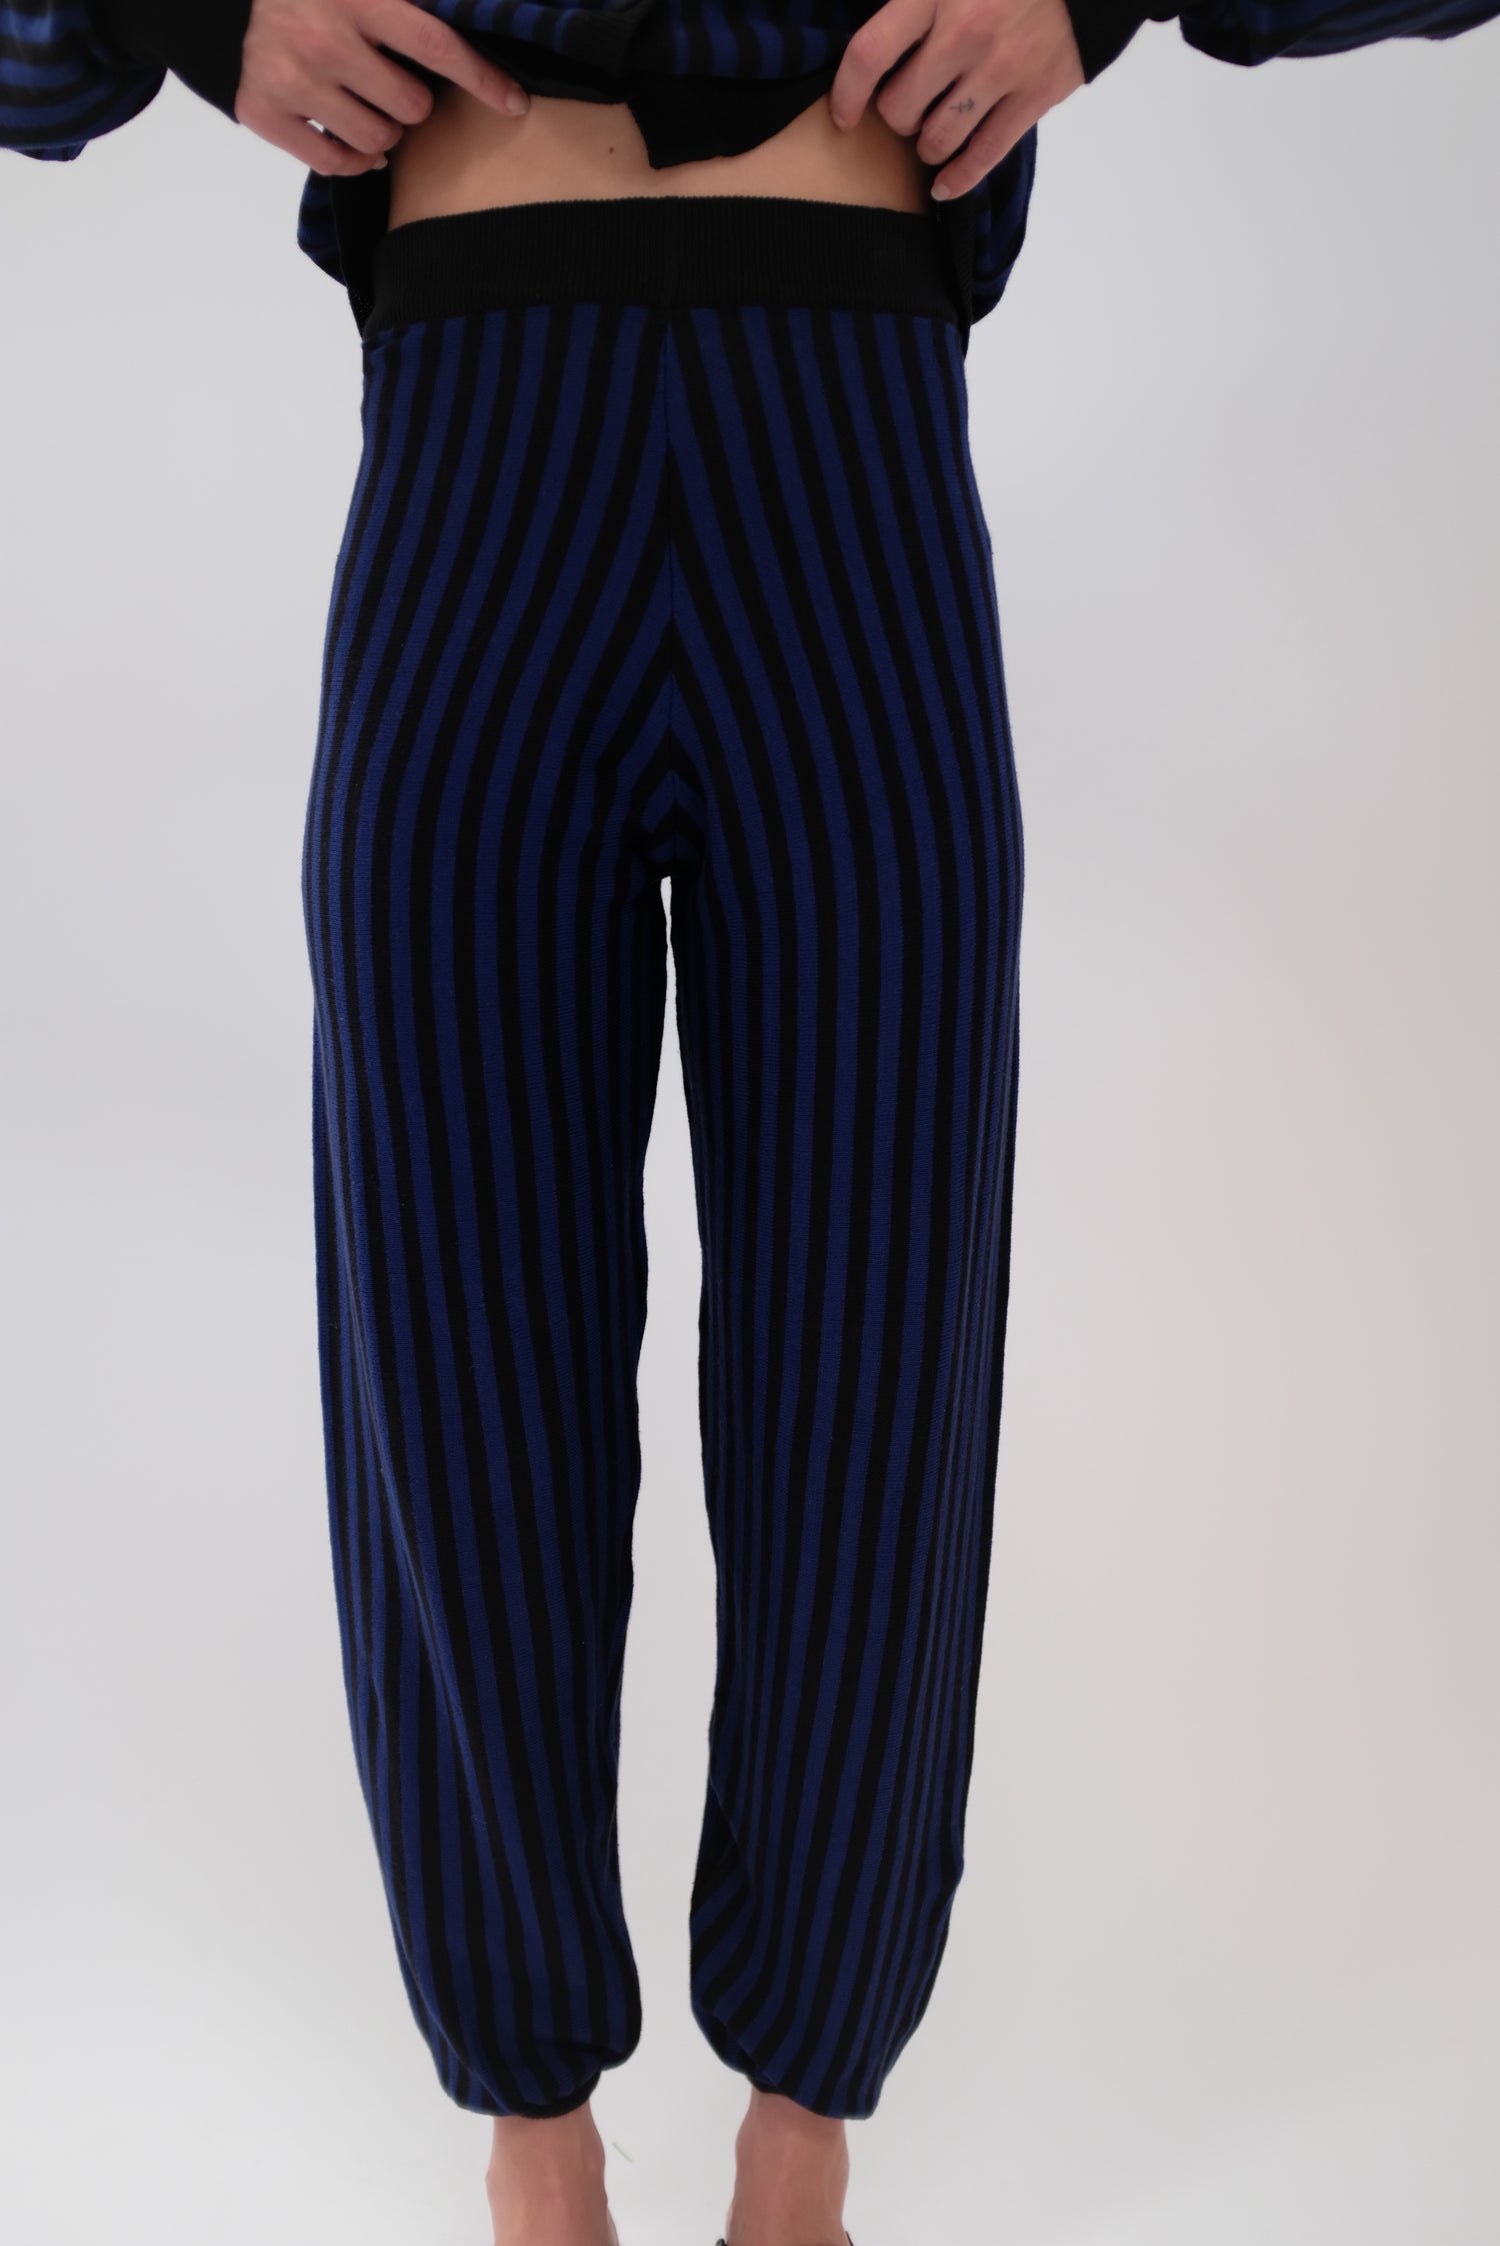 Beklina Cotton Knit Pants Striped Black/Medianoche